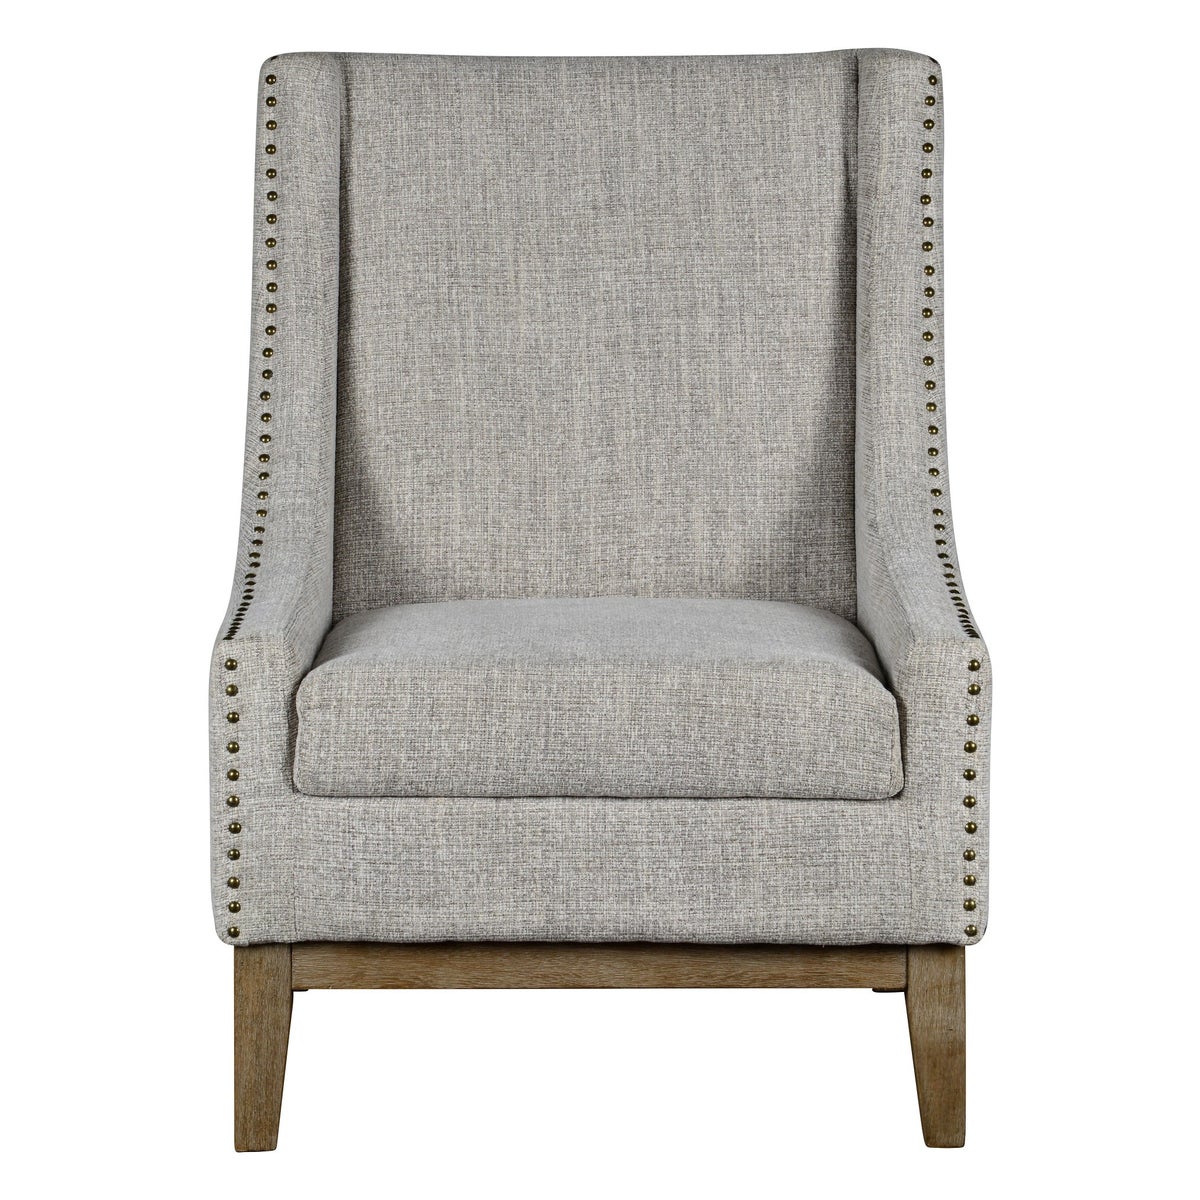 -Jasmine Chair (Monarch Oatmeal)